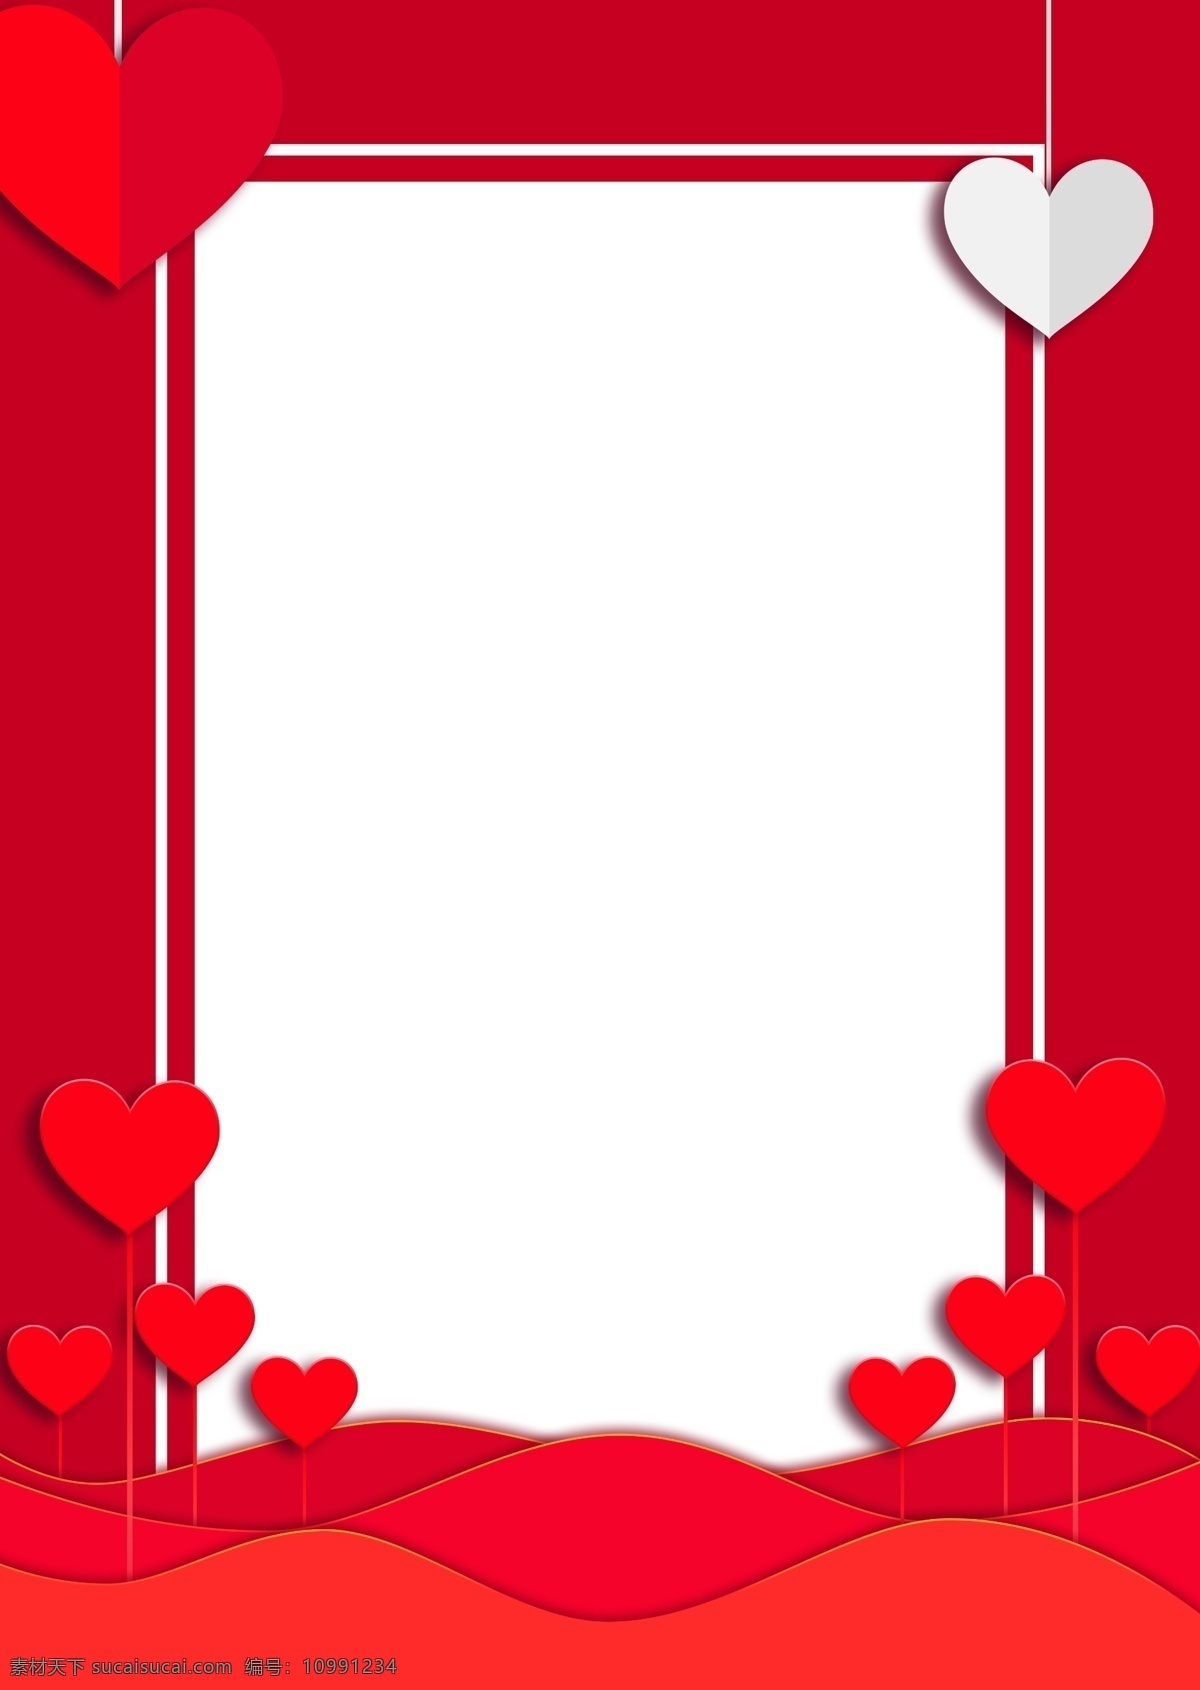 520 浪漫 情人节 红色 背景 表白节 红心 心形 剪纸 爱心 浪漫情人节 海报